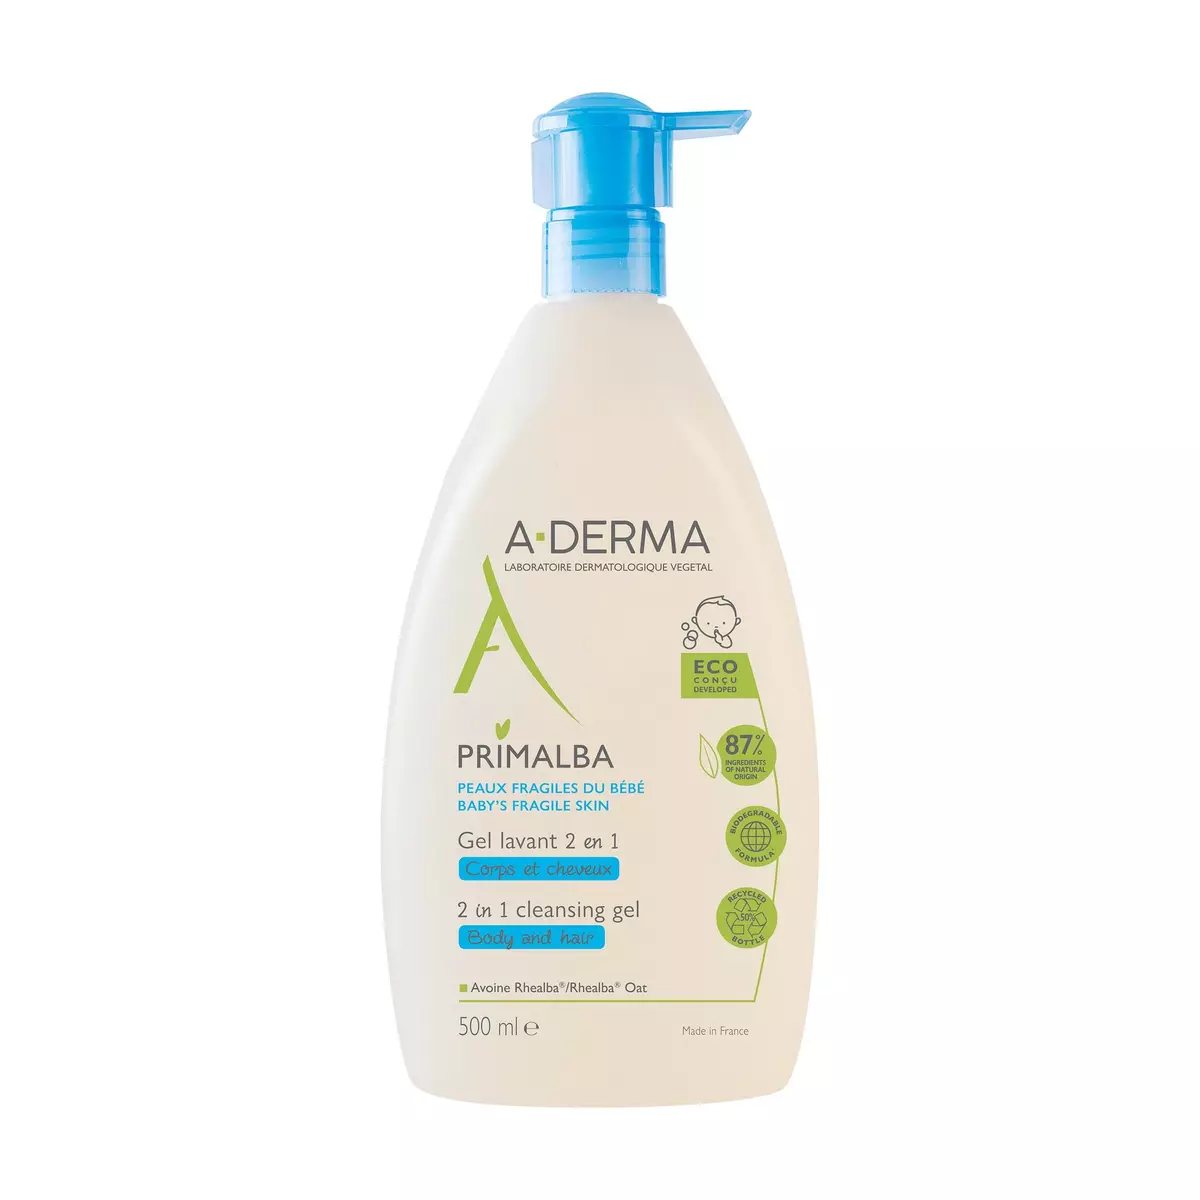 A-DERMA Primalba Gel lavant 2 en 1 corps & cheveux pour peaux fragiles du bébé 750ml